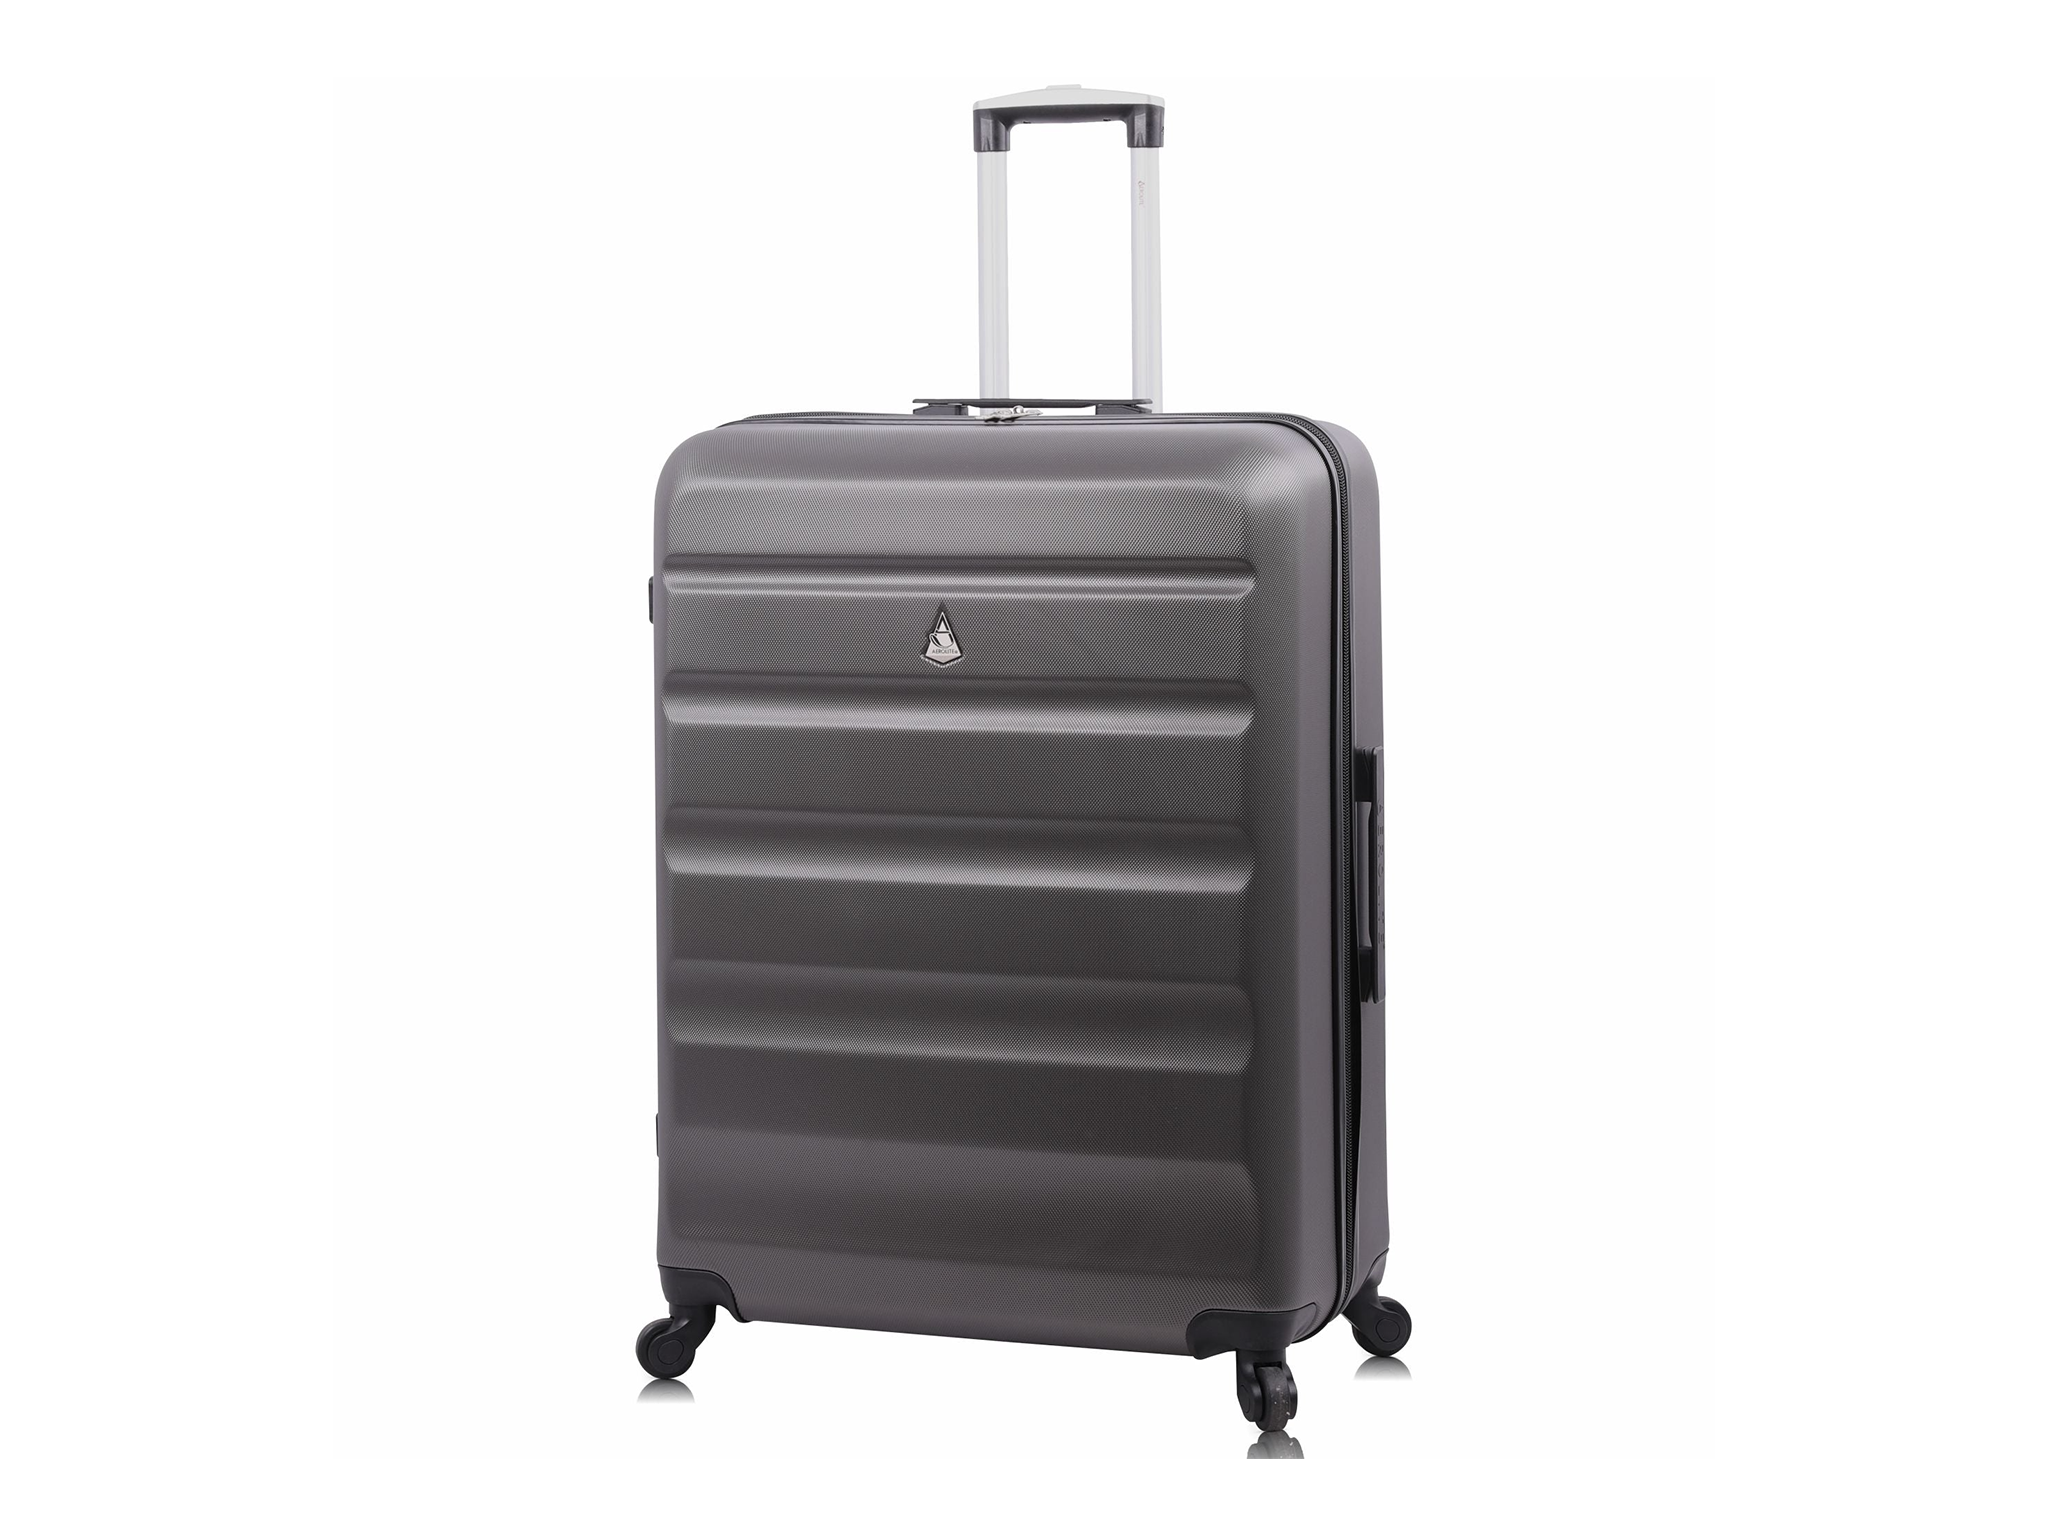 Aerolite large lightweight hard shell luggage suitcase